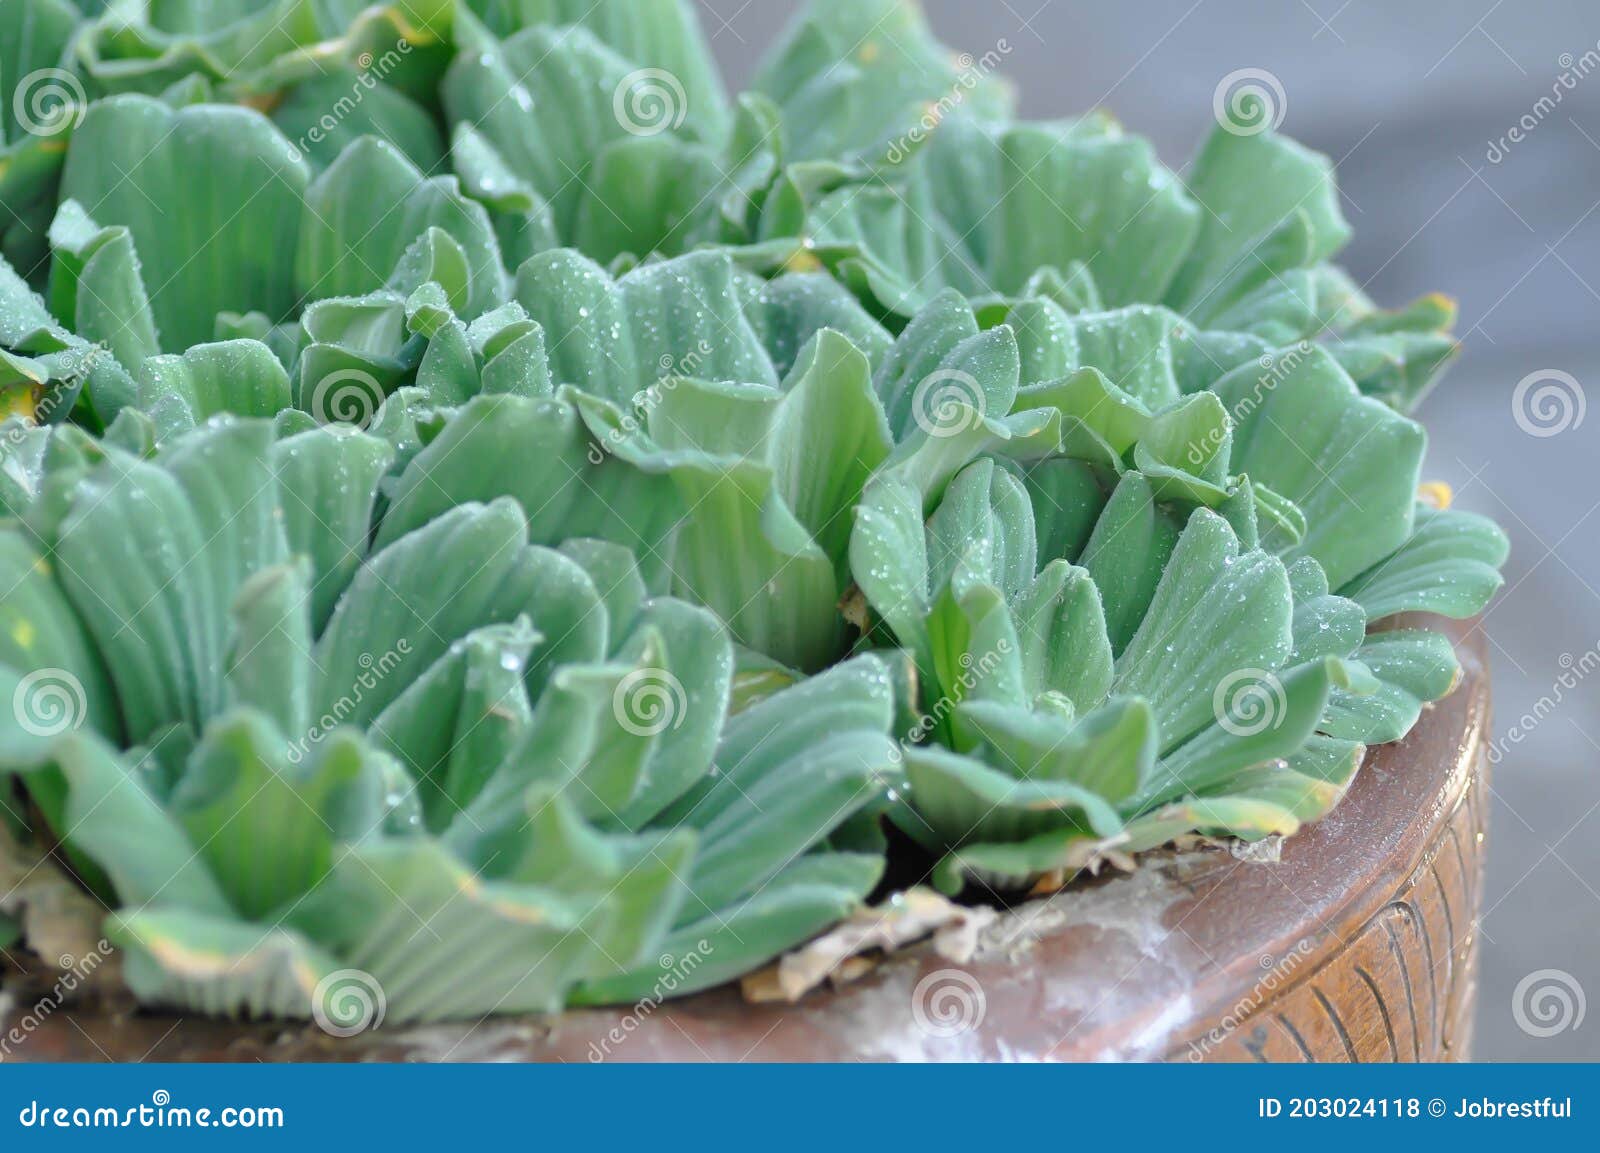 eichornia crassipes, water hyacinth or dew drop